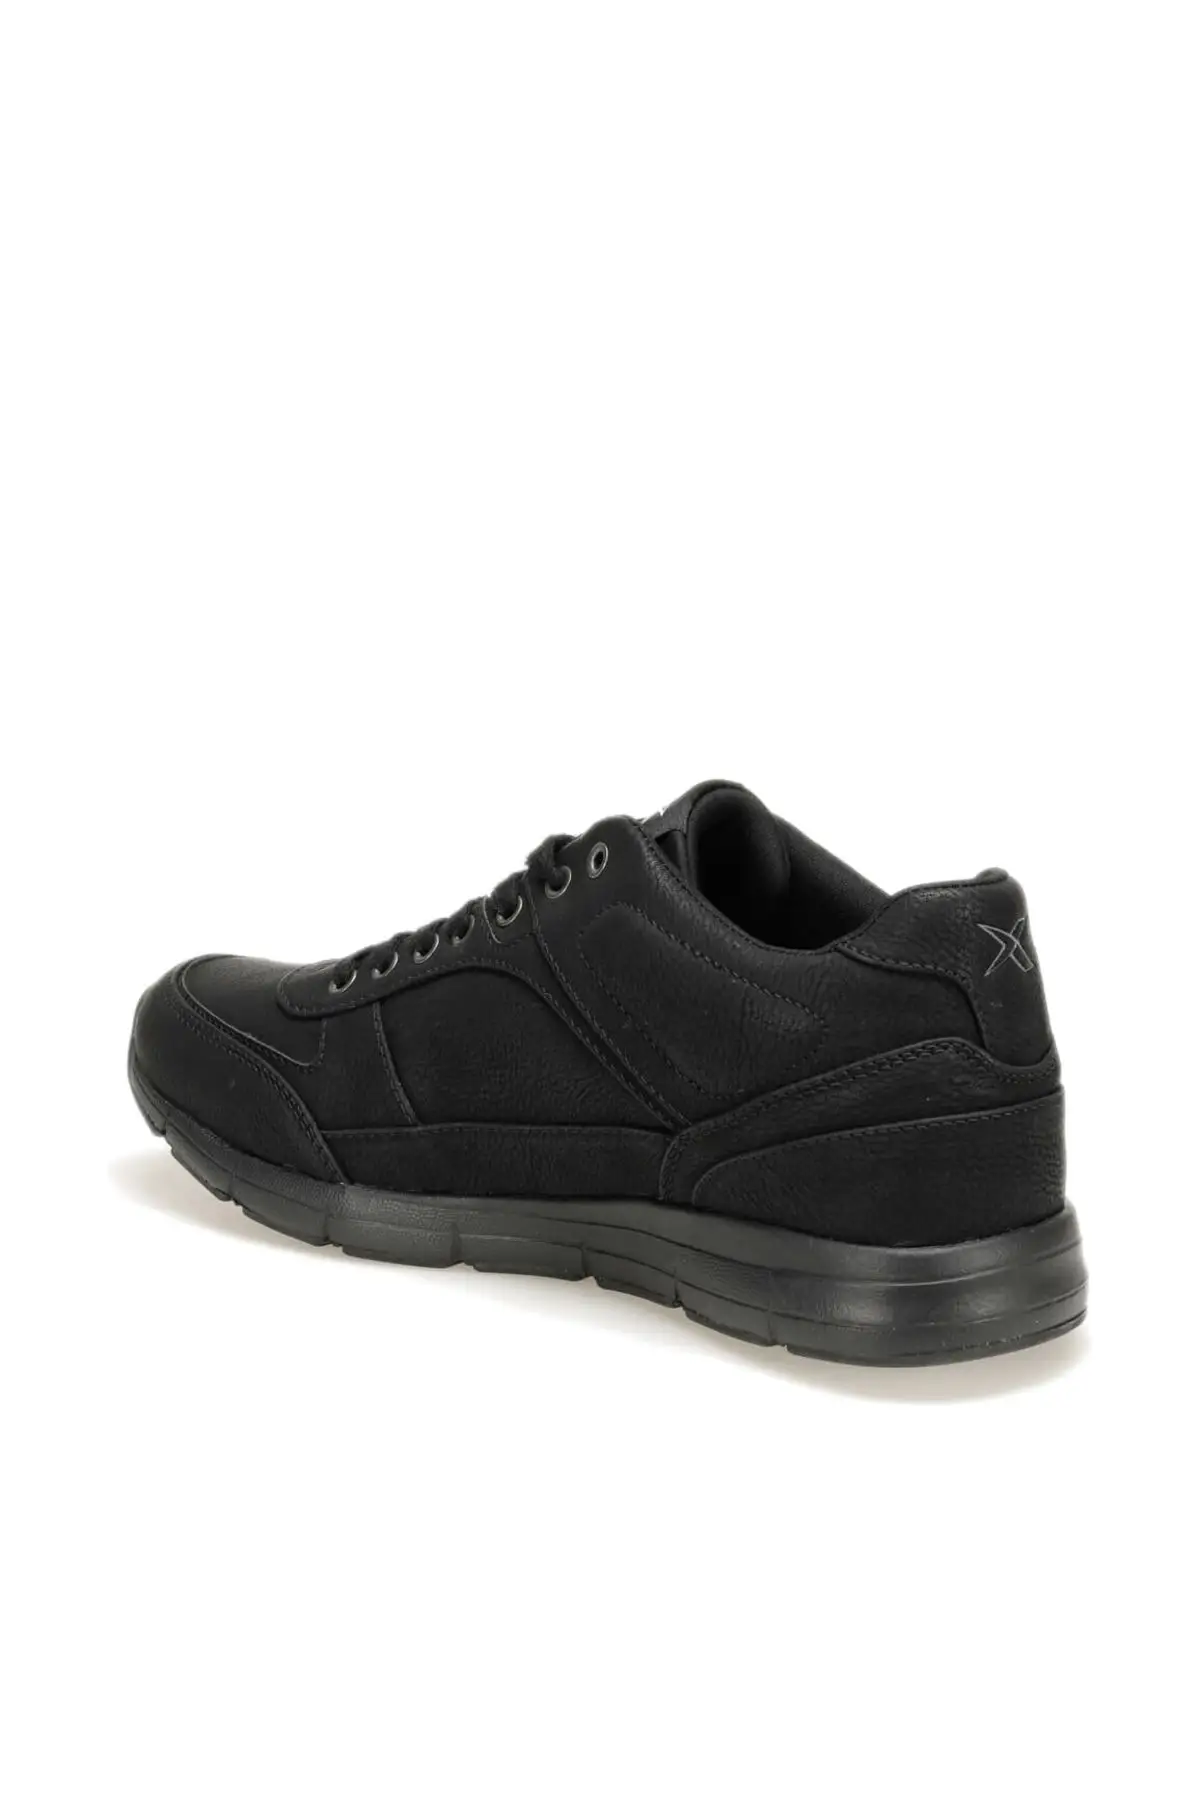 

SarEn Guarn 9pr Black Men's Thick Sole Sneaker Sport Shoes (Kinetix)